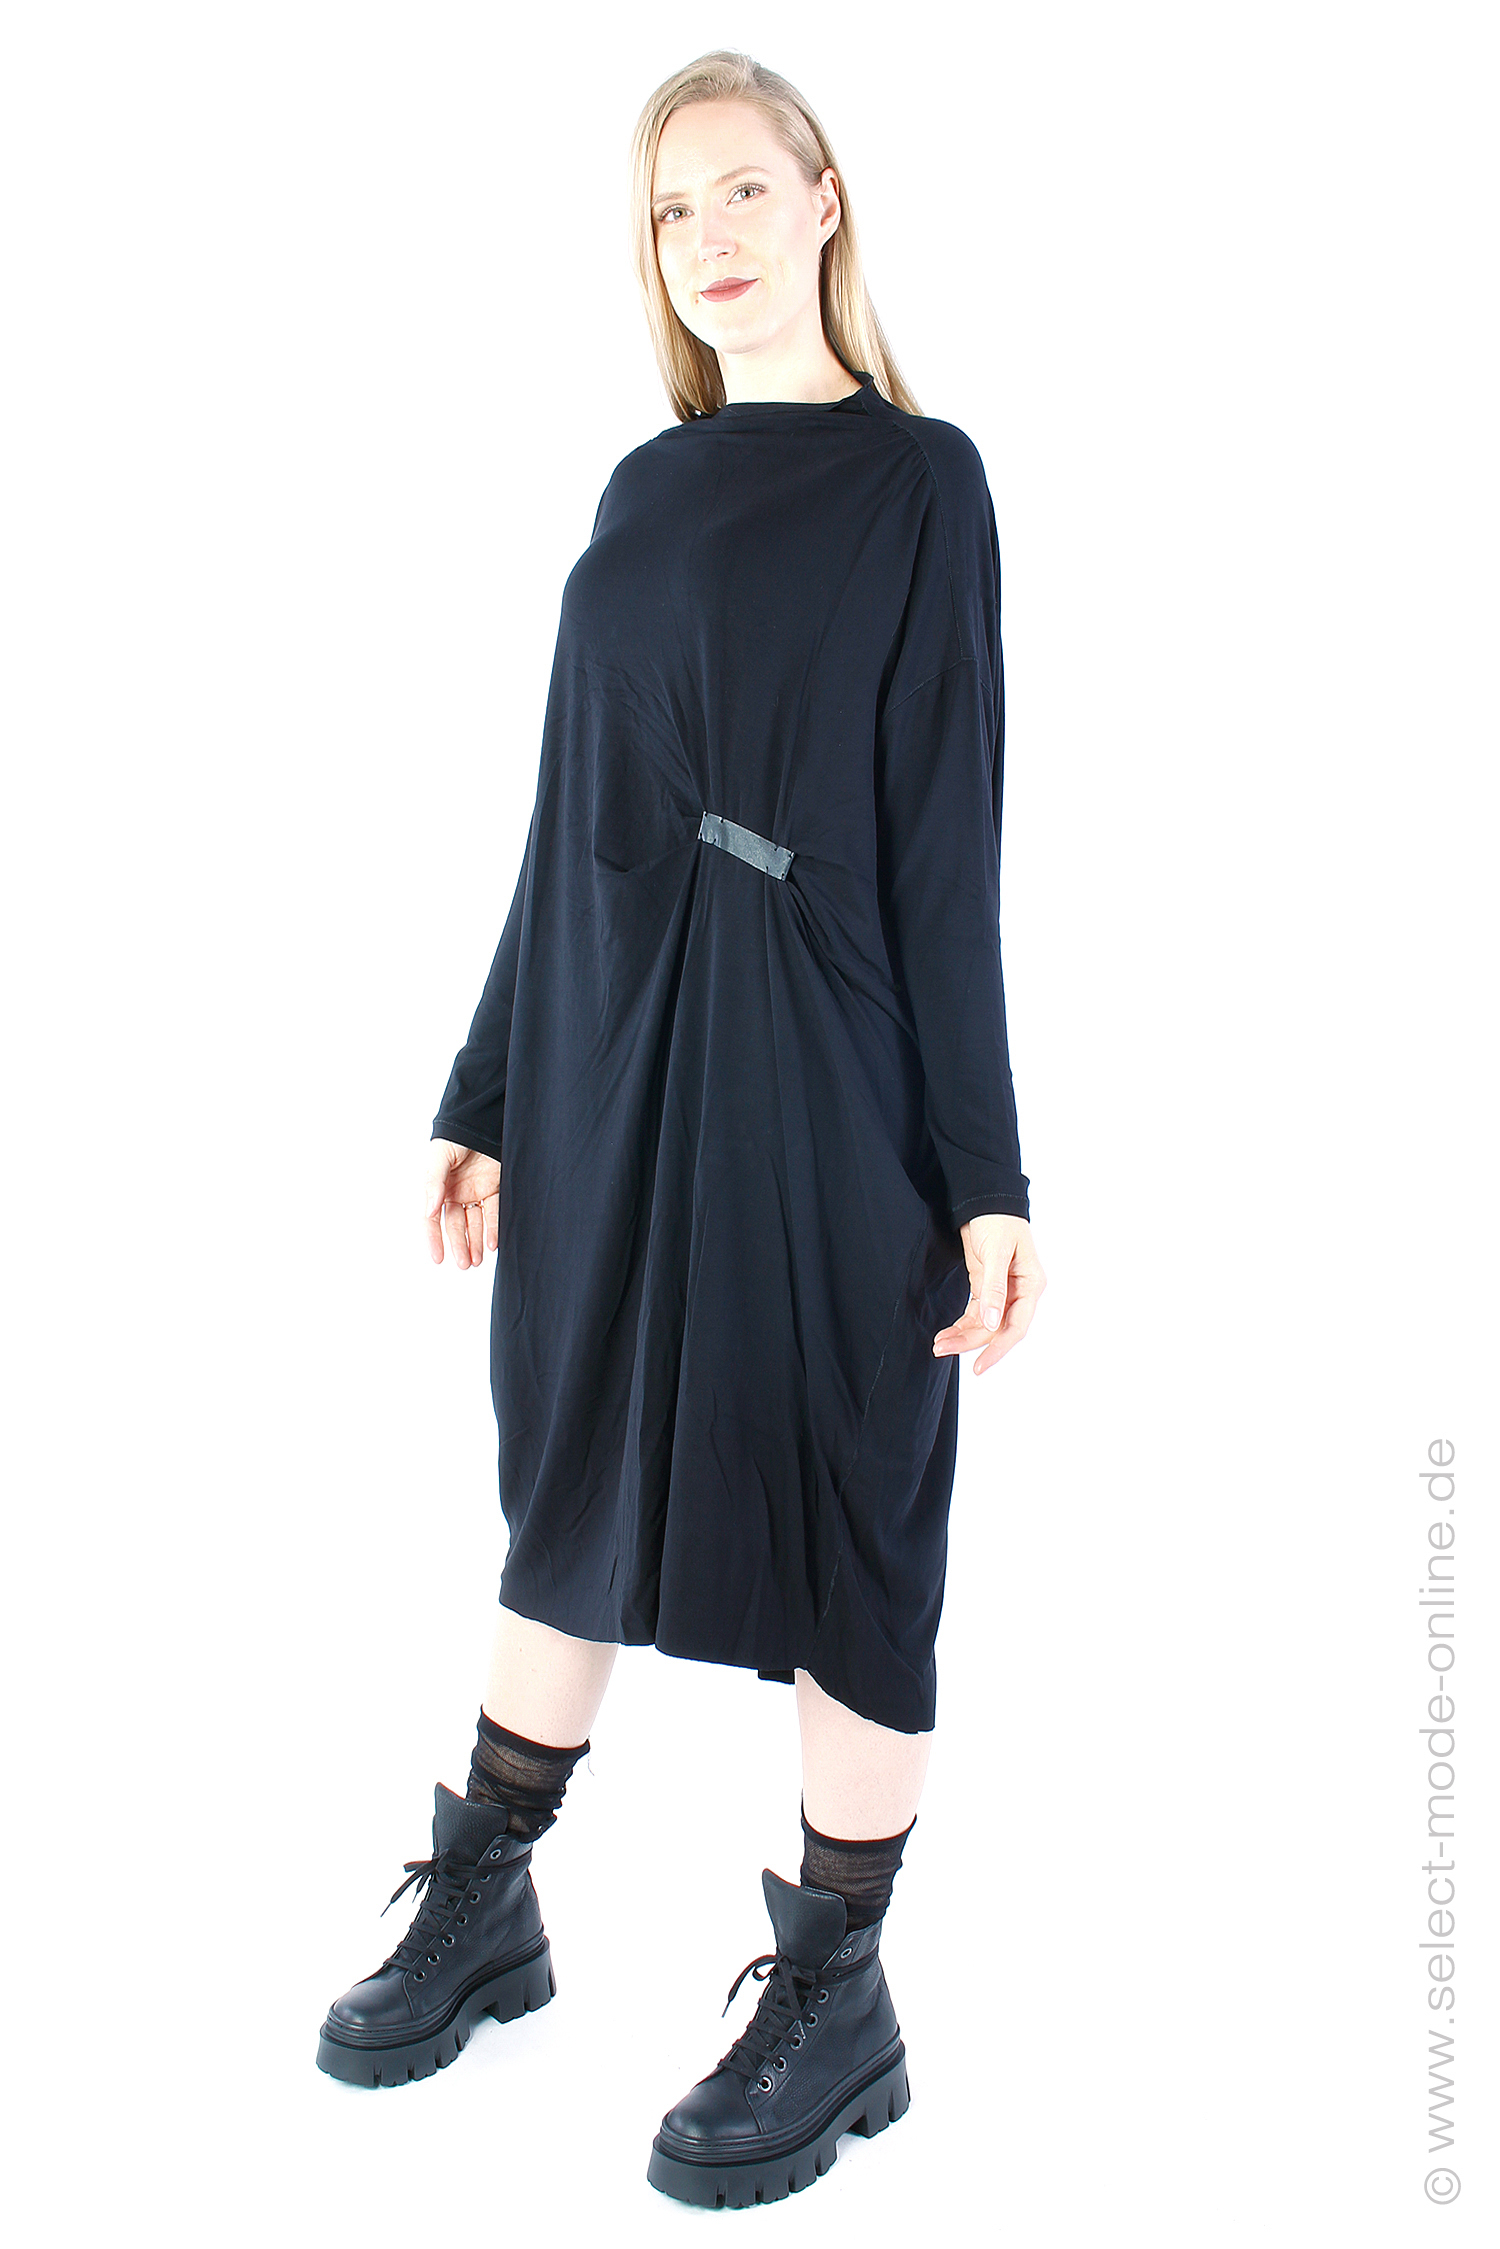 Jerseykleid mit Raffung - schwarz - 1243